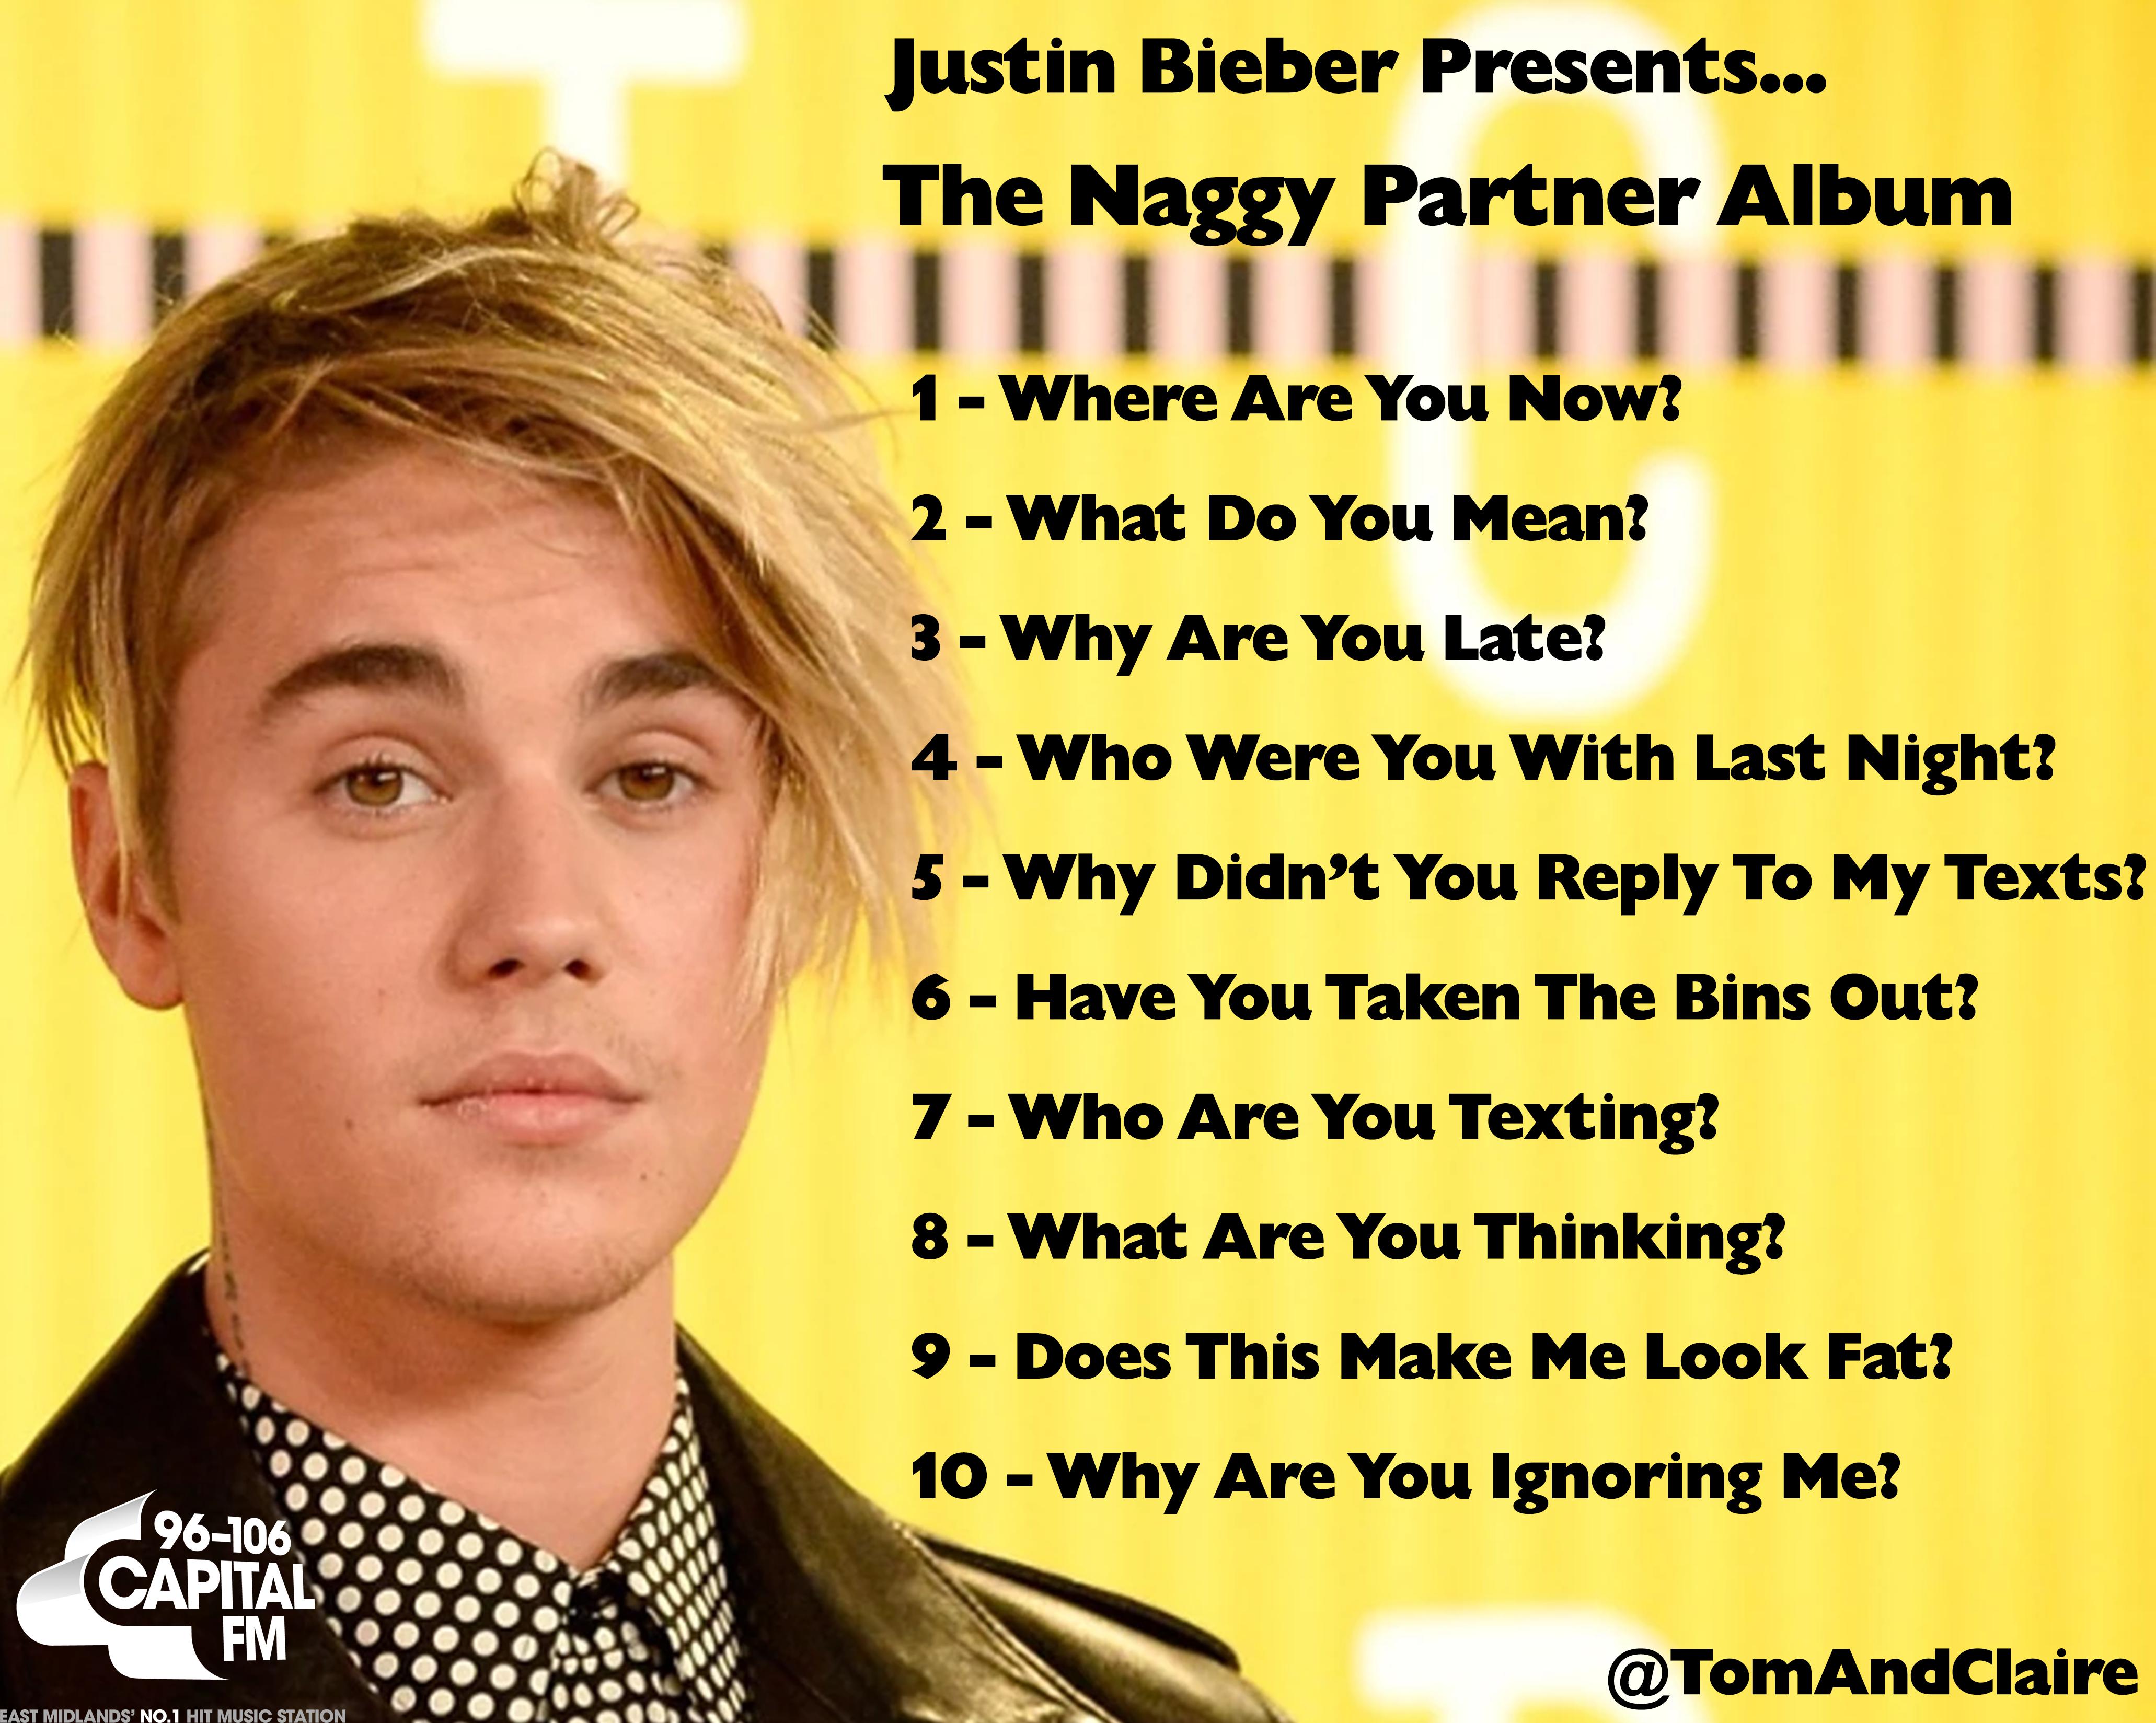 Fake Bieber album